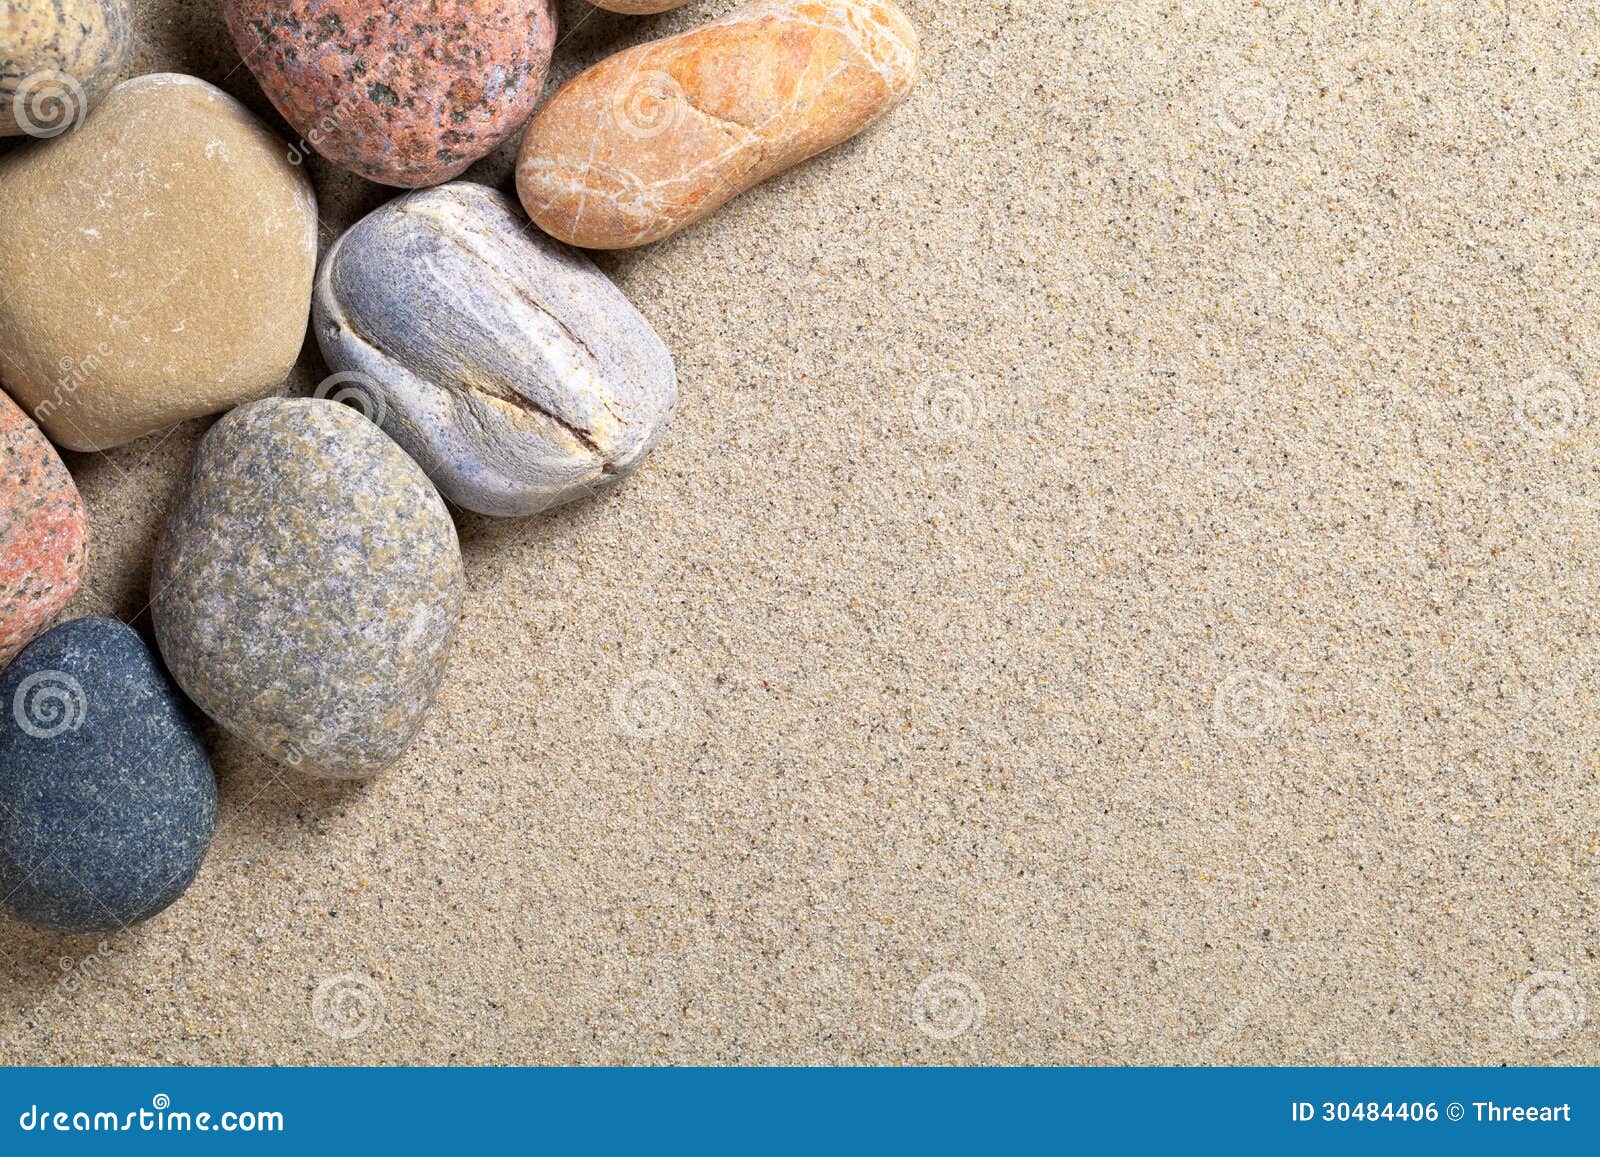 Стоун песок. Фон песок камни. Фон бежевый камень. Рисунки из камней на песке. Фон камни для демонстрации продукта.